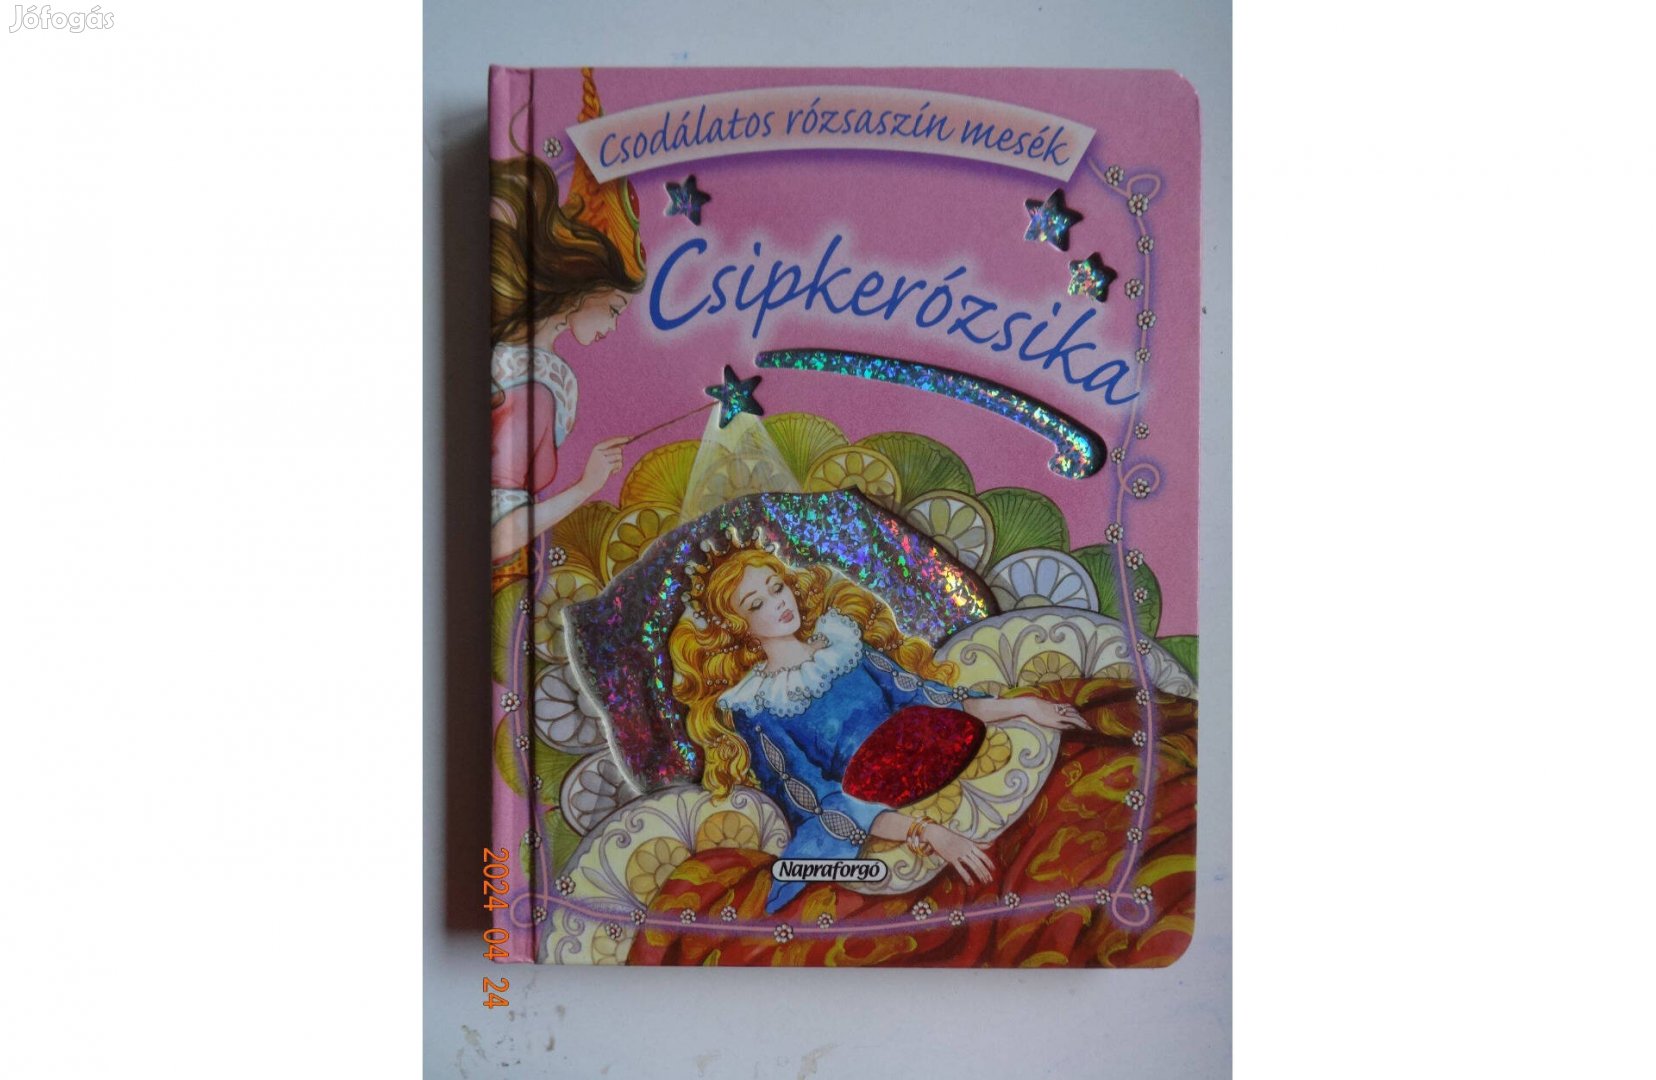 Csipkerózsika - Csodálatos rózsaszín mesék - kemény lapos mesekönyv